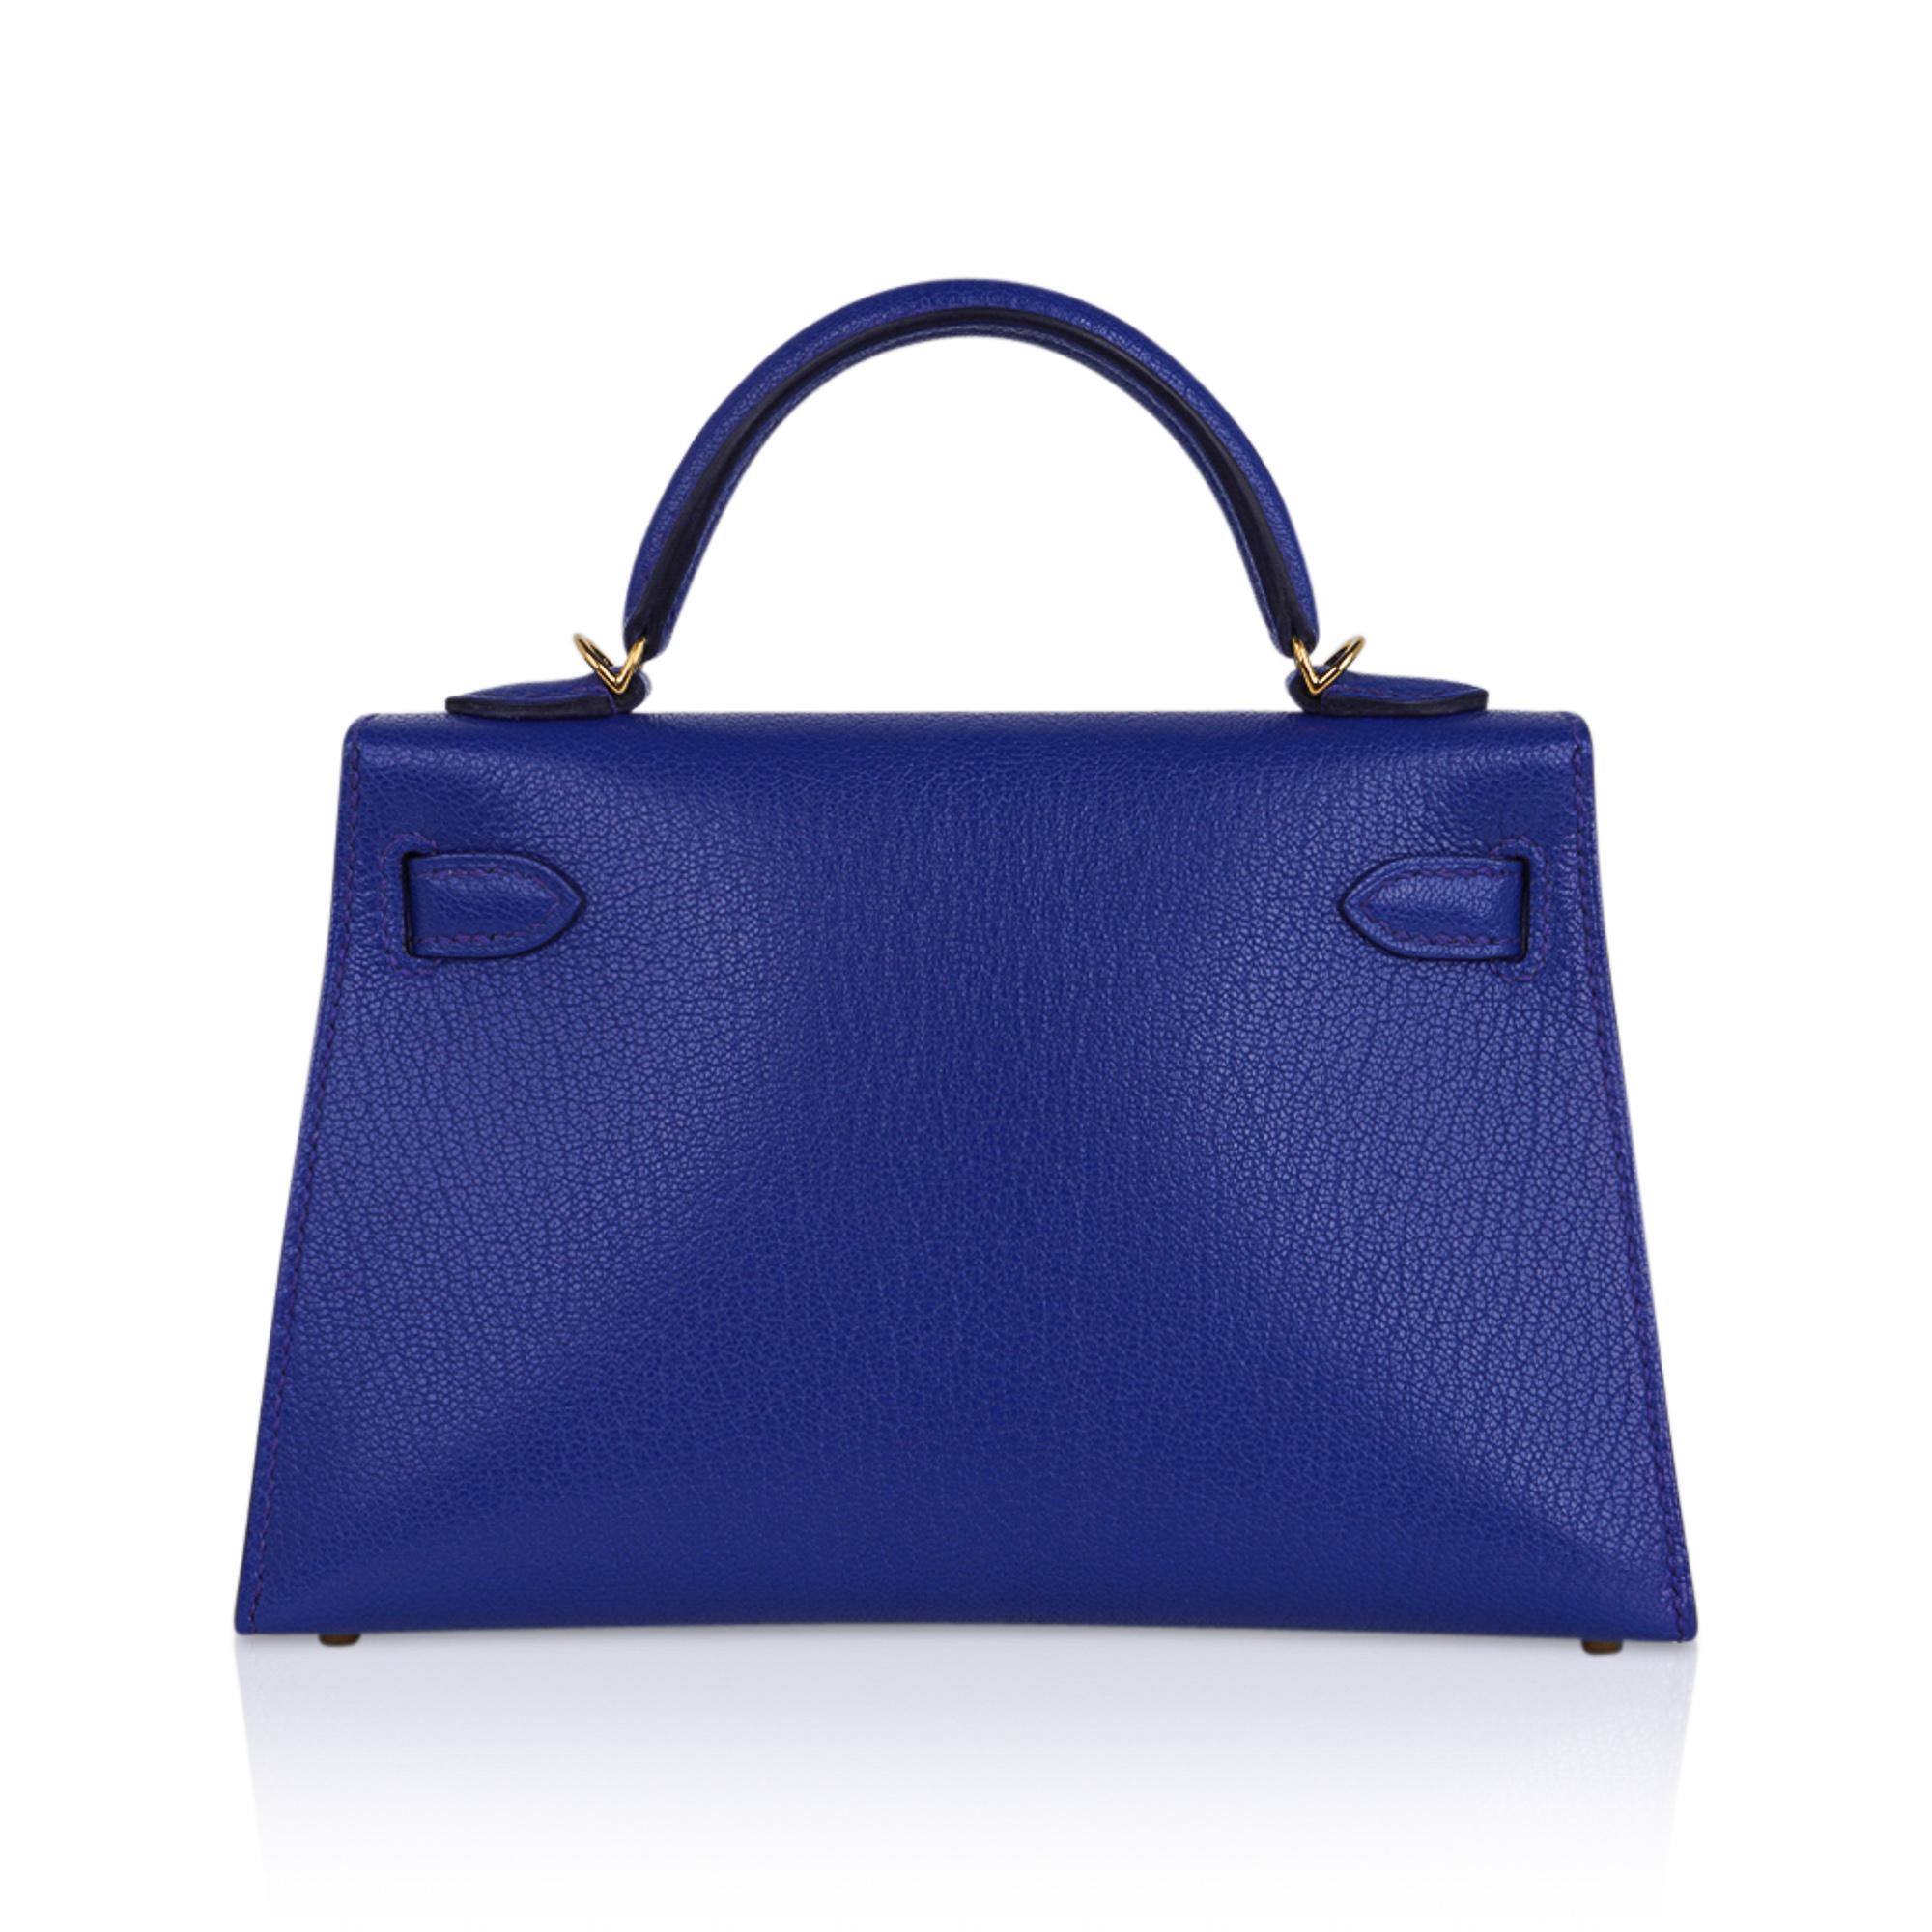 Women's Hermes Kelly 20 Mini Sellier Bag Blue de Royal Chevre Leather Gold Hardware